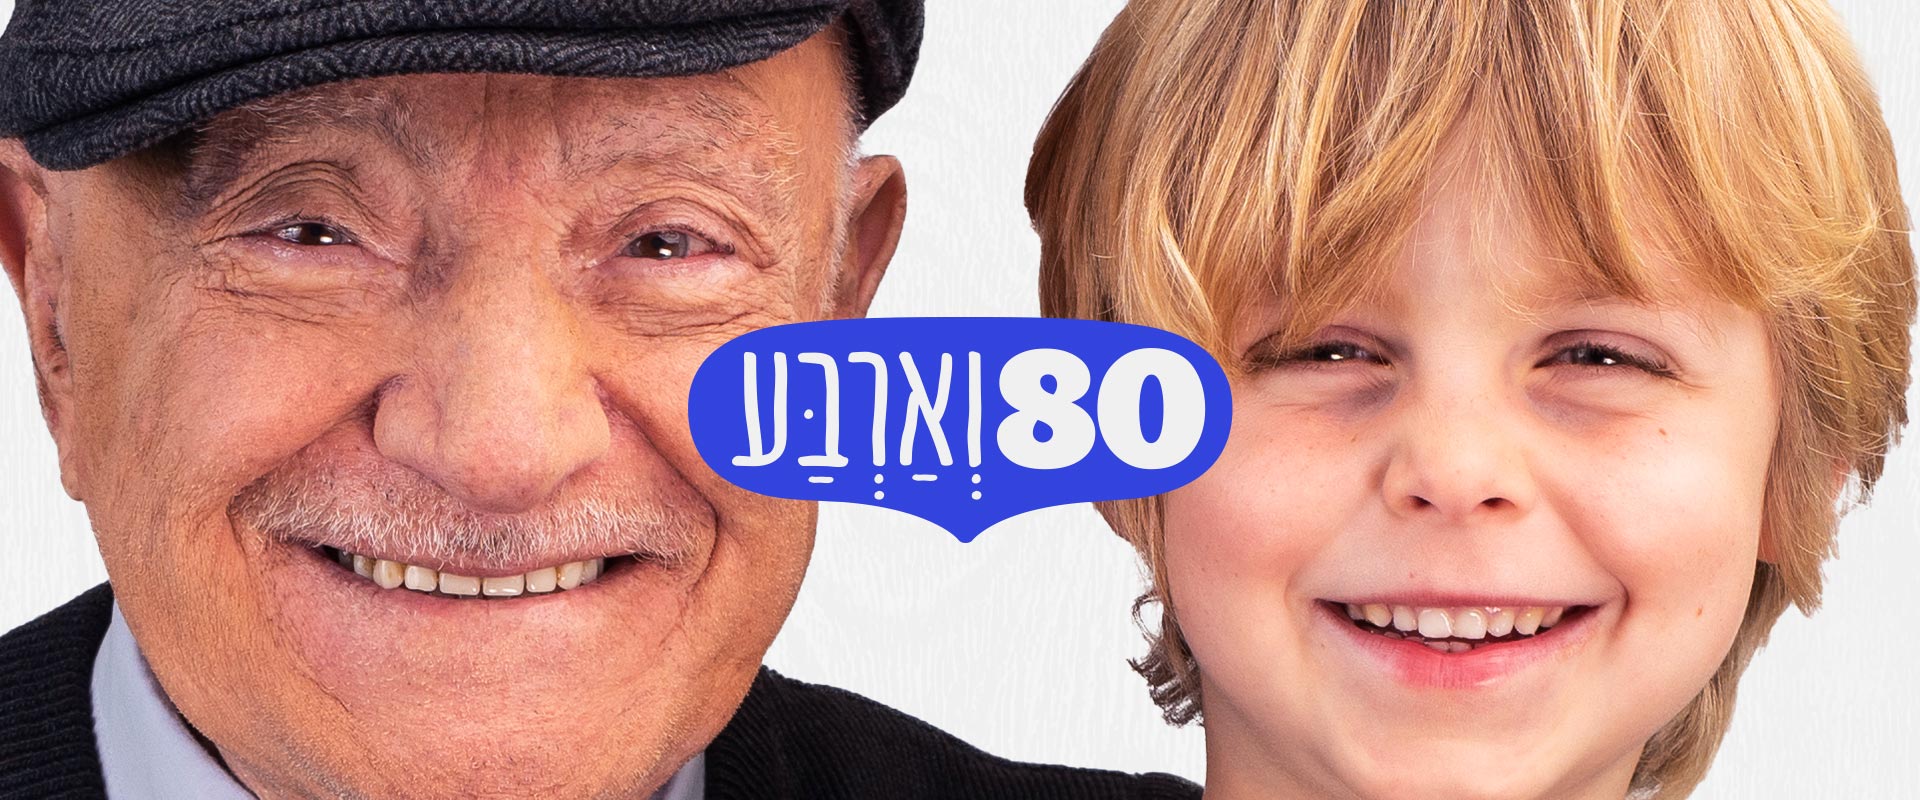 80 וארבע - יהודית ירדן